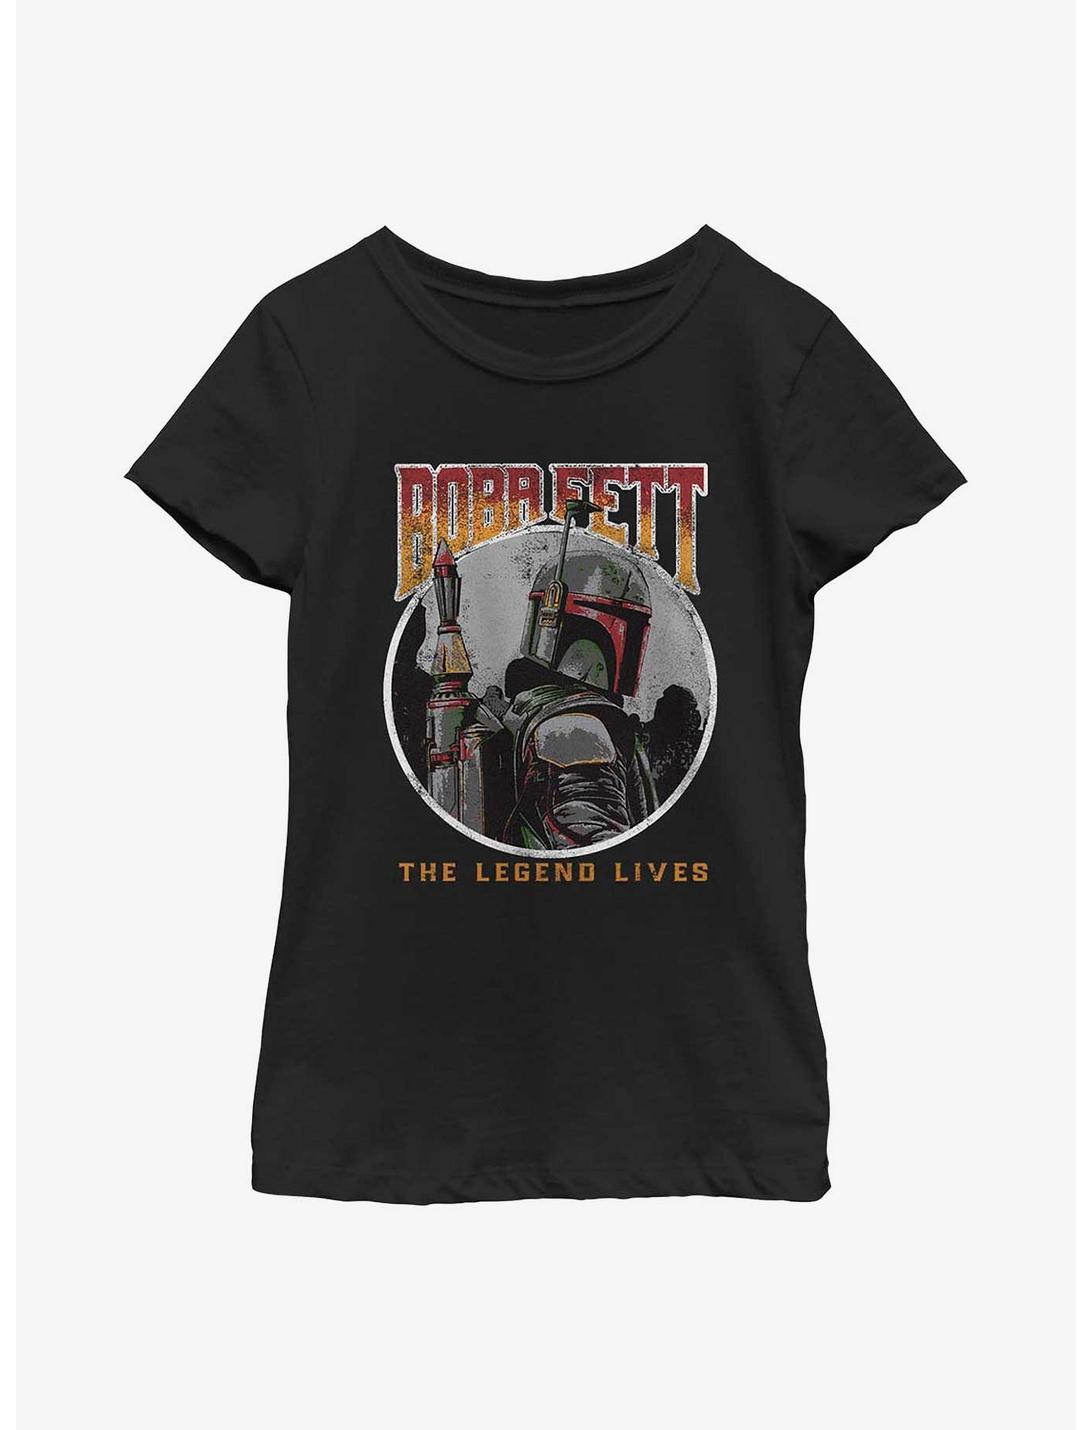 Star Wars: The Book Of Boba Fett Vintage Legend Lives Youth Girls T-Shirt, BLACK, hi-res